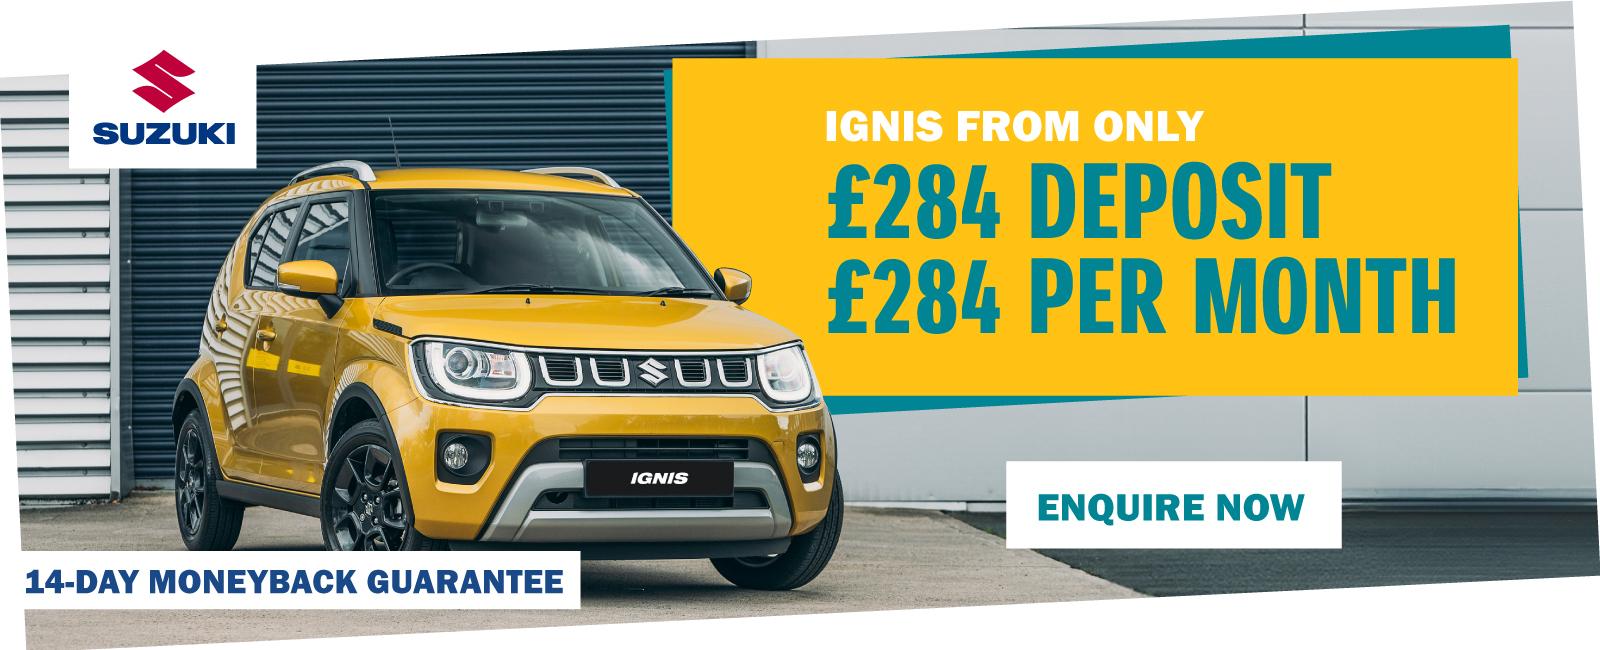 Suzuki Ignis from only £284 deposit, £284 per month